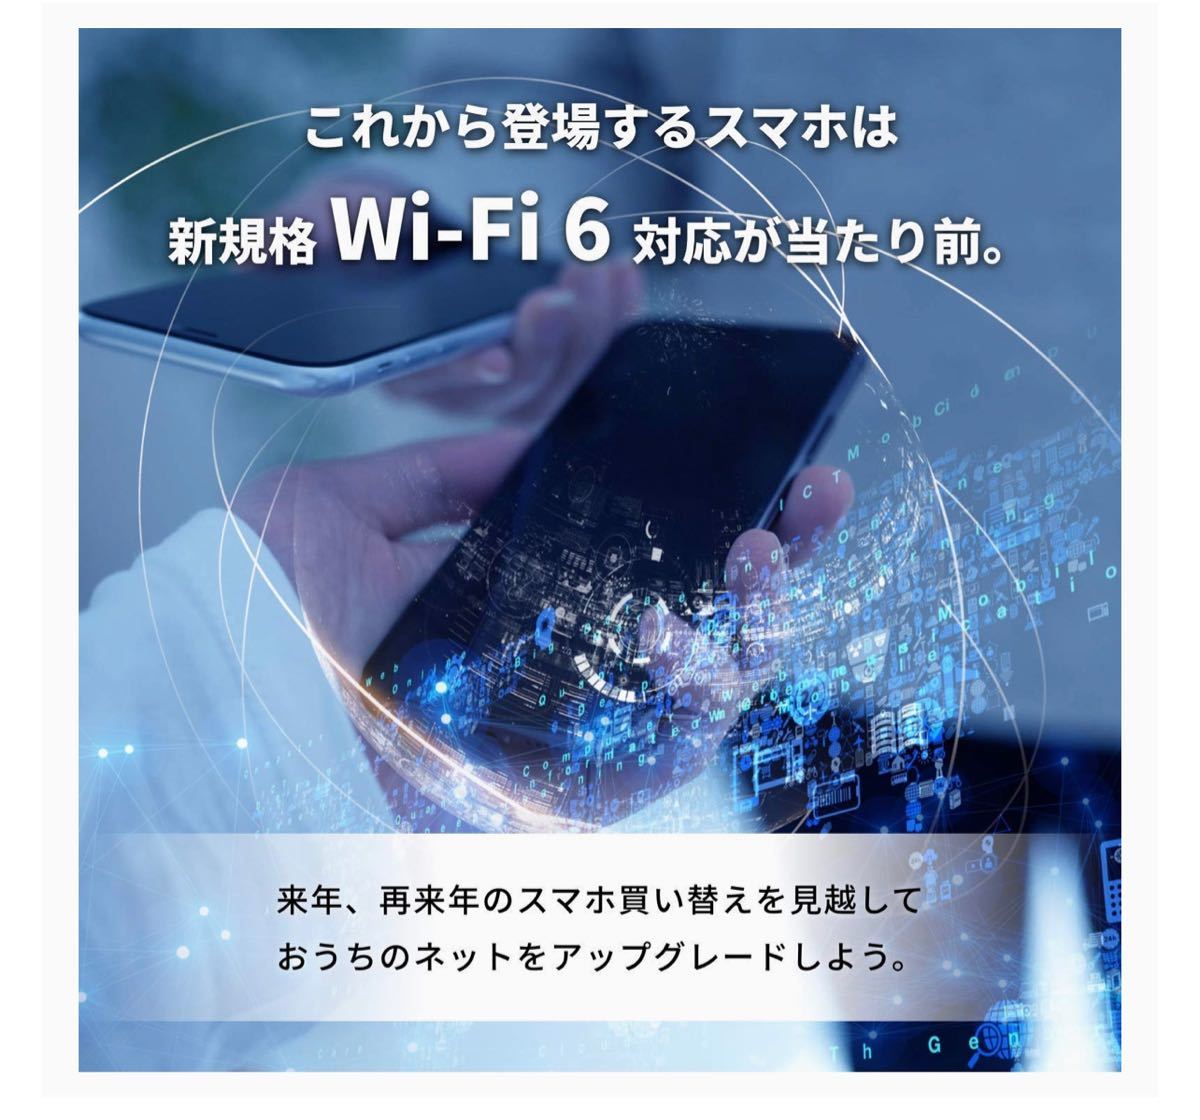 【美品・30日保証】Wi-Fi 6(11ax)対応Wi-Fiルーター 2402+800Mbps WSR-3200AX4S-BK